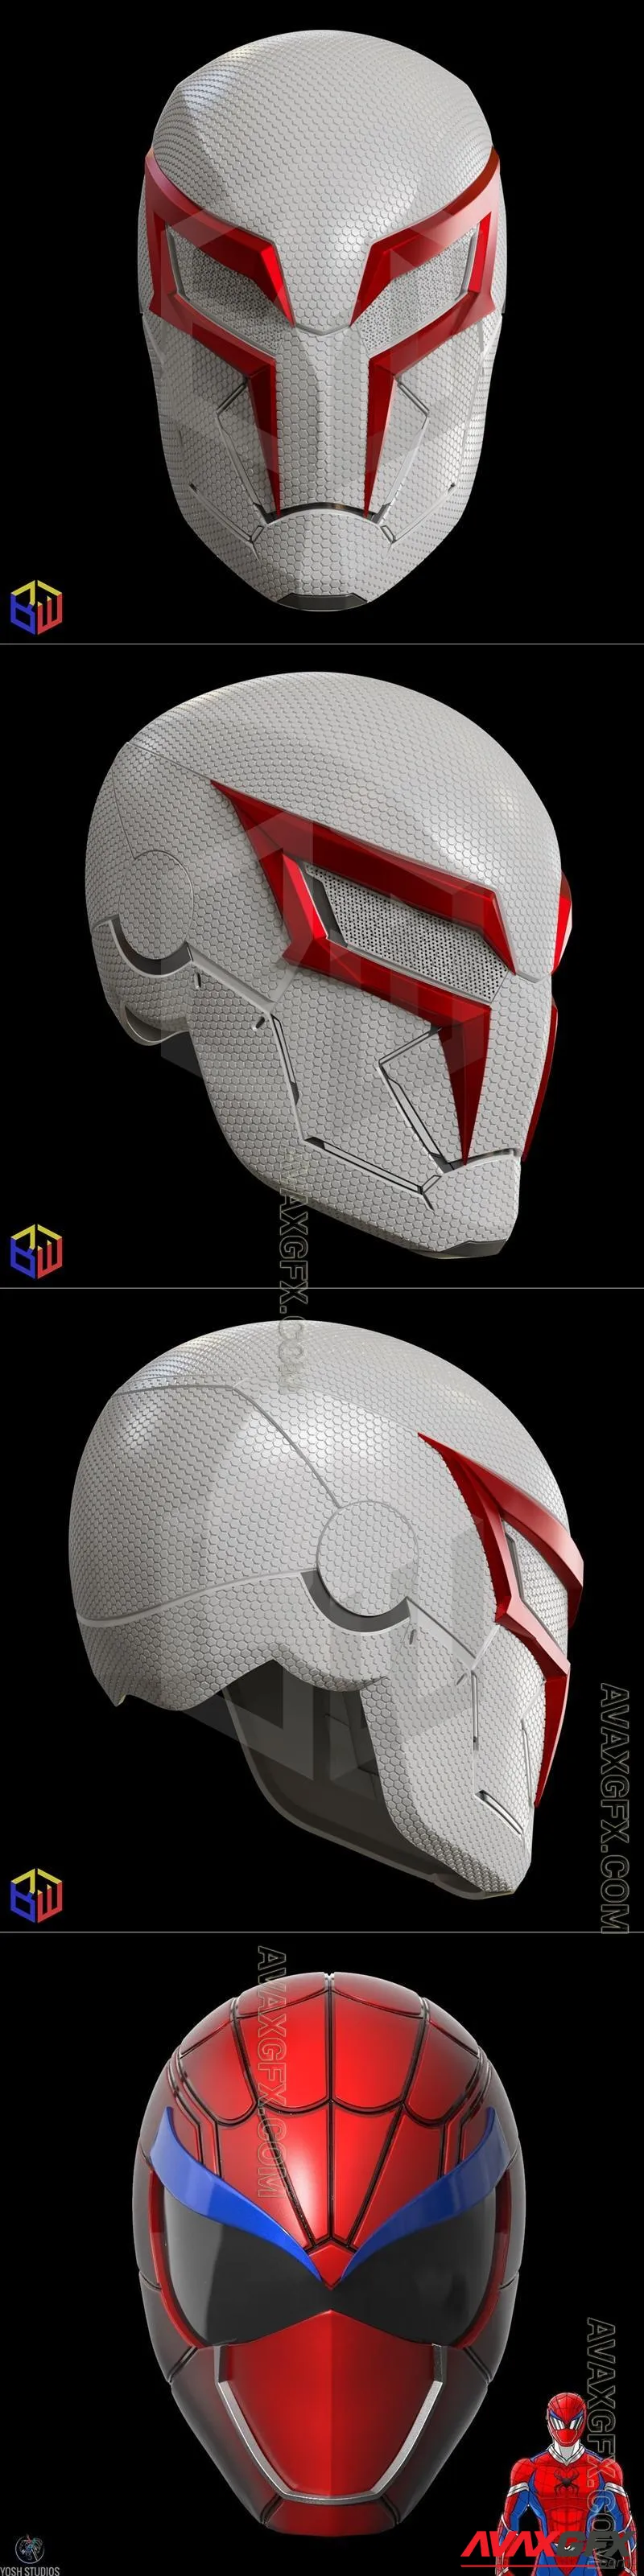 Spider-Man 2099 V2 Helmet Textured and Spider Man Ranger Helmet - STL 3D Model